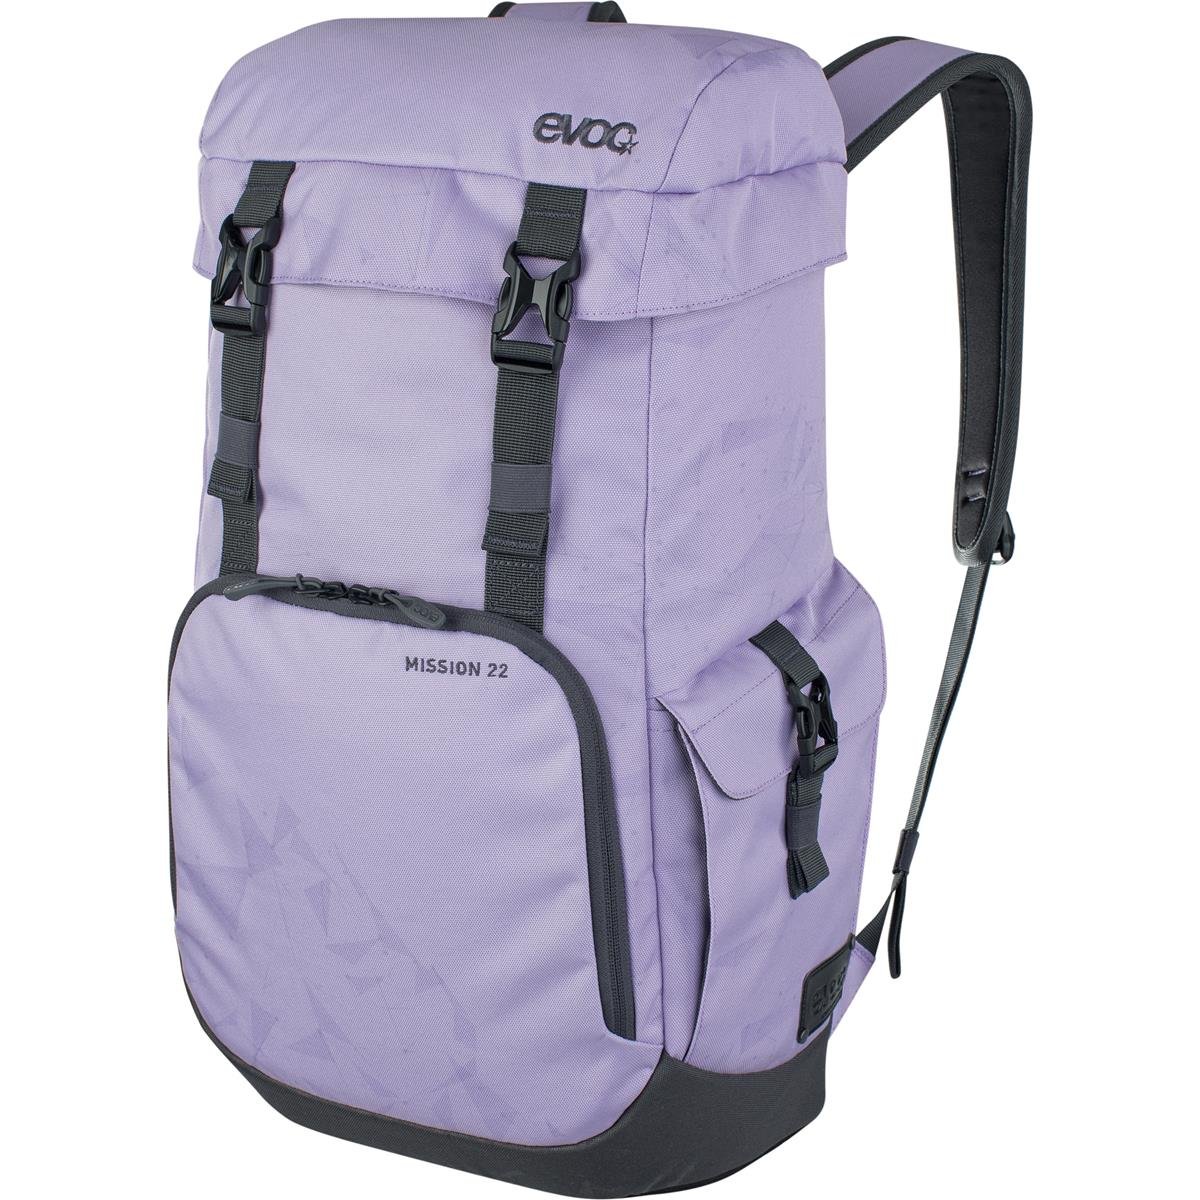 Evoc Backpack Mission 22 Multicolor